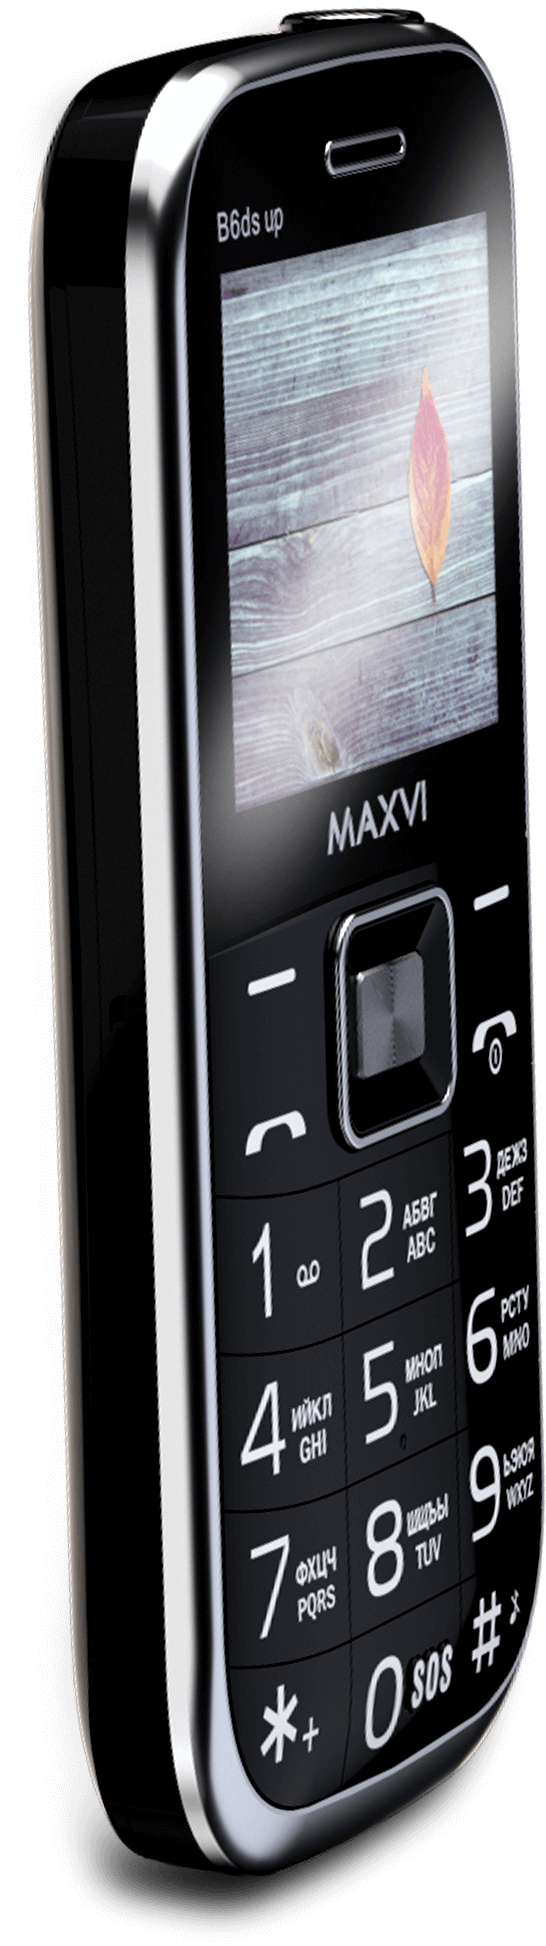 Мобильный телефон Maxvi B6ds